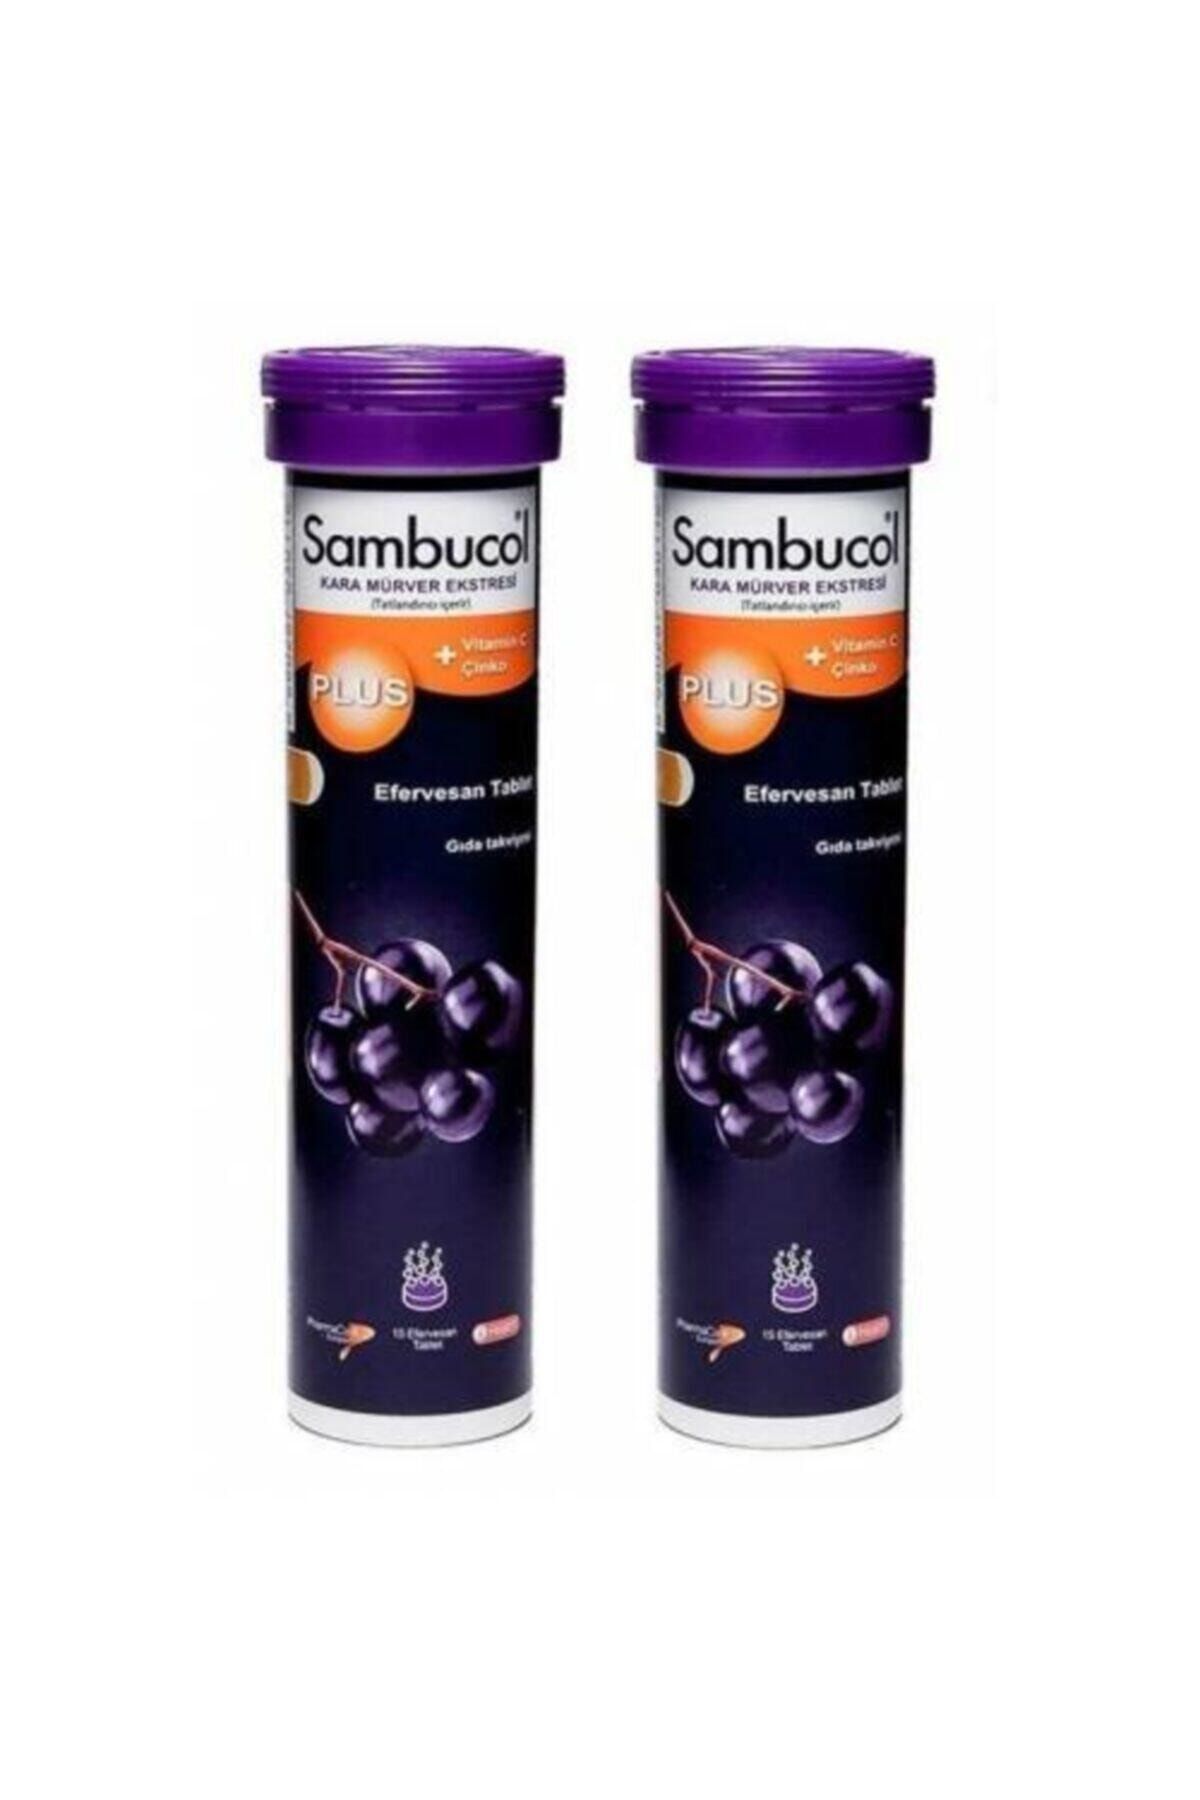 Sambucol Plus Effervesan Tablet 2 Kutu